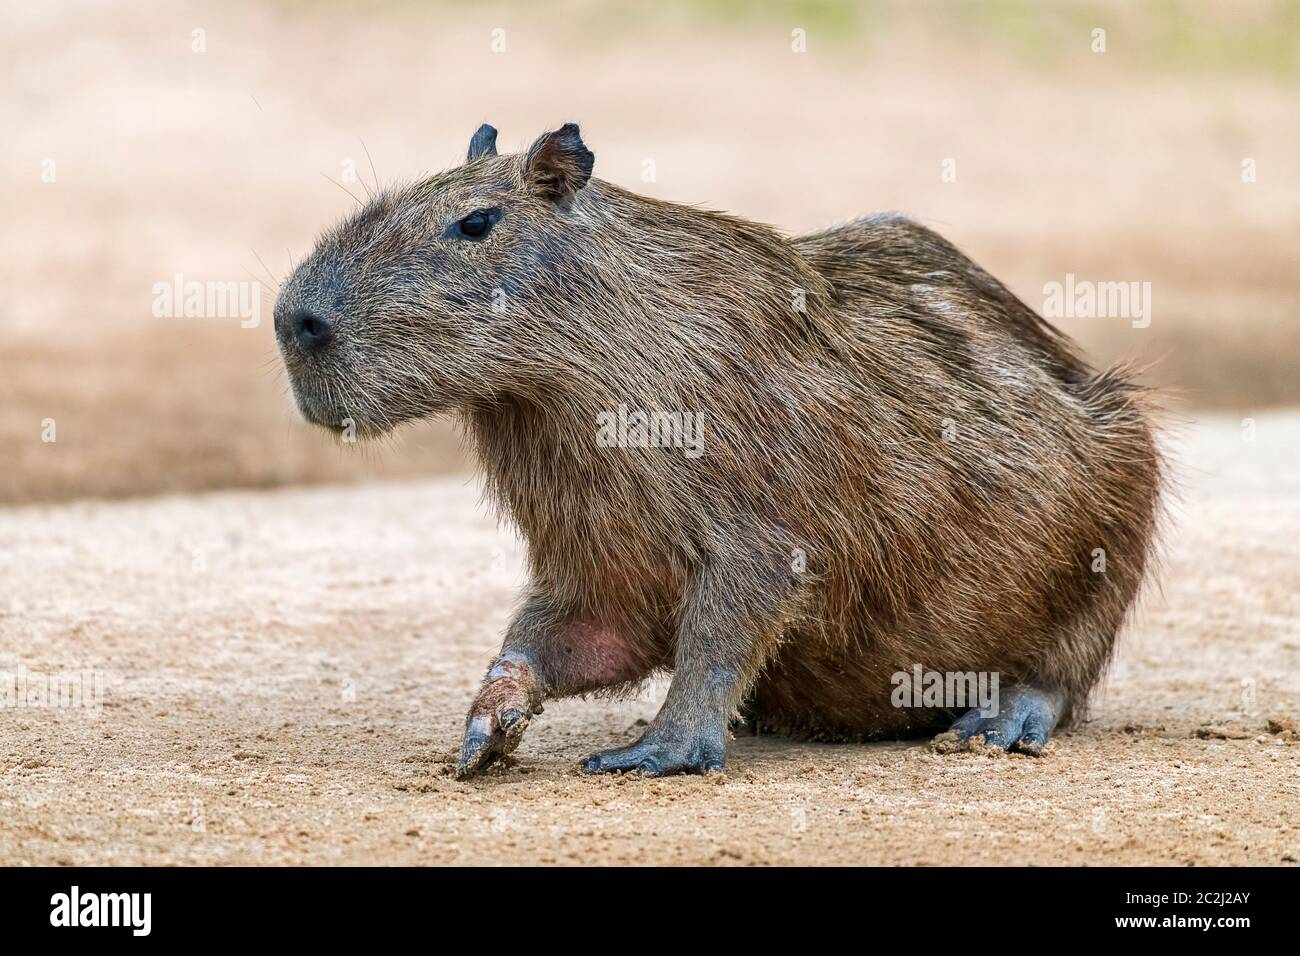 Capybara oder Wasserschwein (Hydrochoerus hydrochaeris) aufmerksam auf sandbank, Pantanal, Mato Grosso, Brasilien Foto Stock